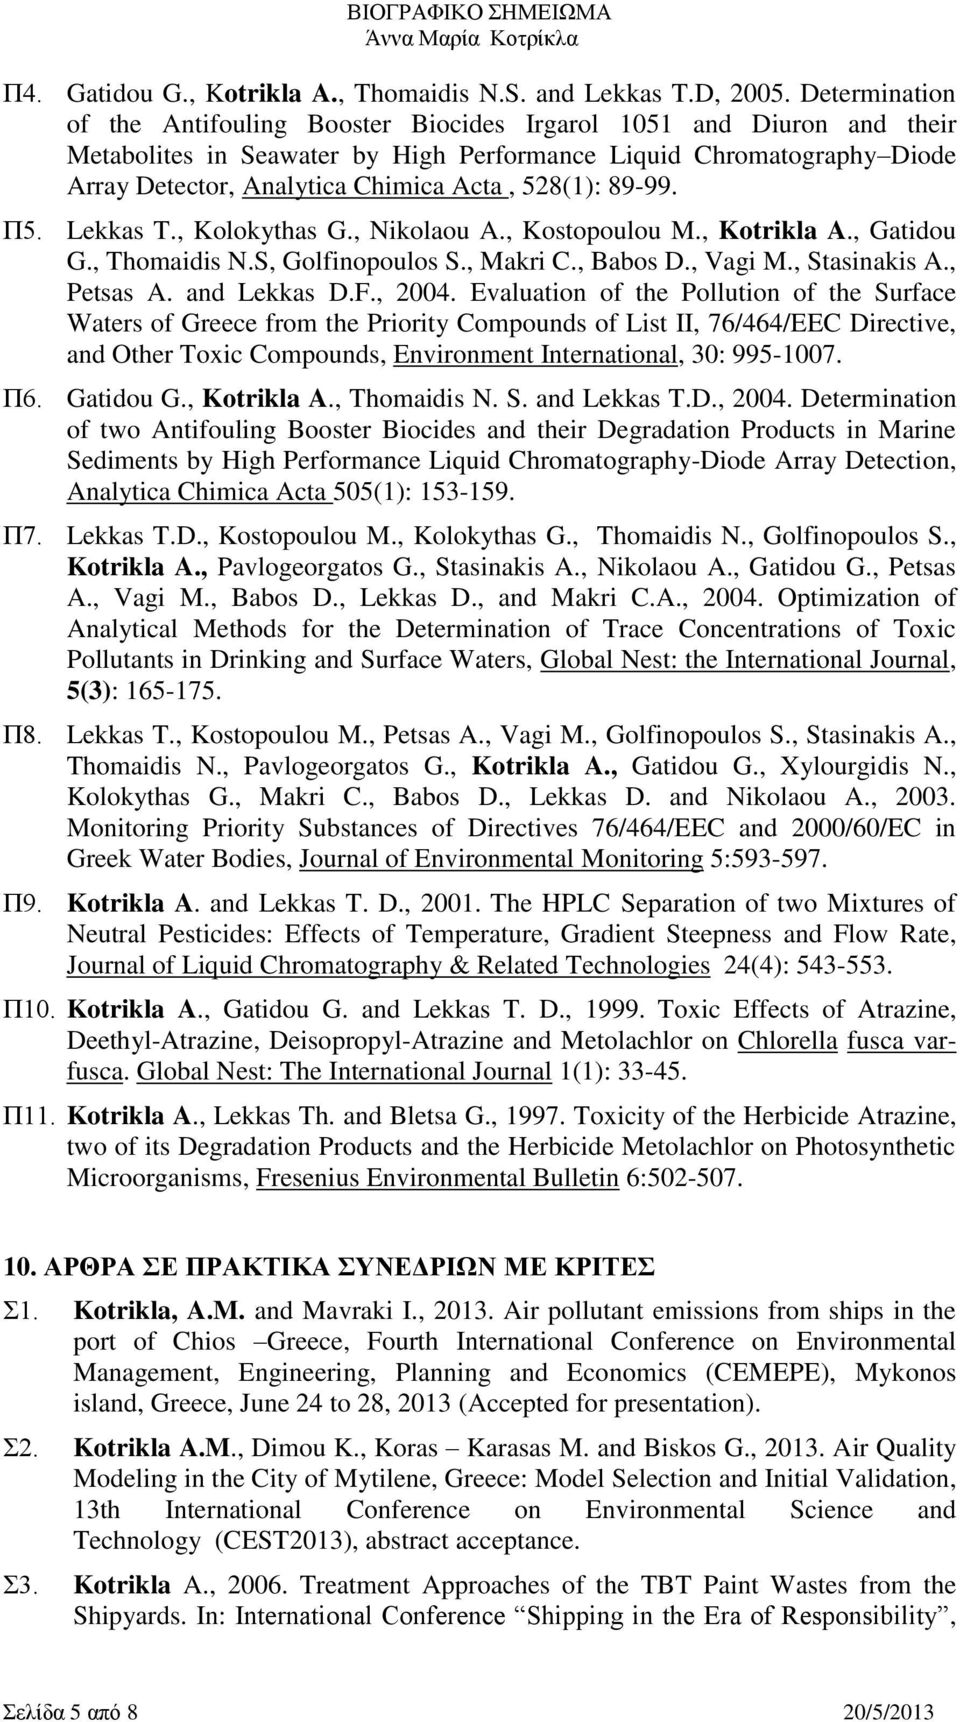 528(1): 89-99. Π5. Lekkas T., Kolokythas G., Nikolaou A., Kostopoulou M., Kotrikla A., Gatidou G., Thomaidis N.S, Golfinopoulos S., Makri C., Babos D., Vagi M., Stasinakis A., Petsas A. and Lekkas D.